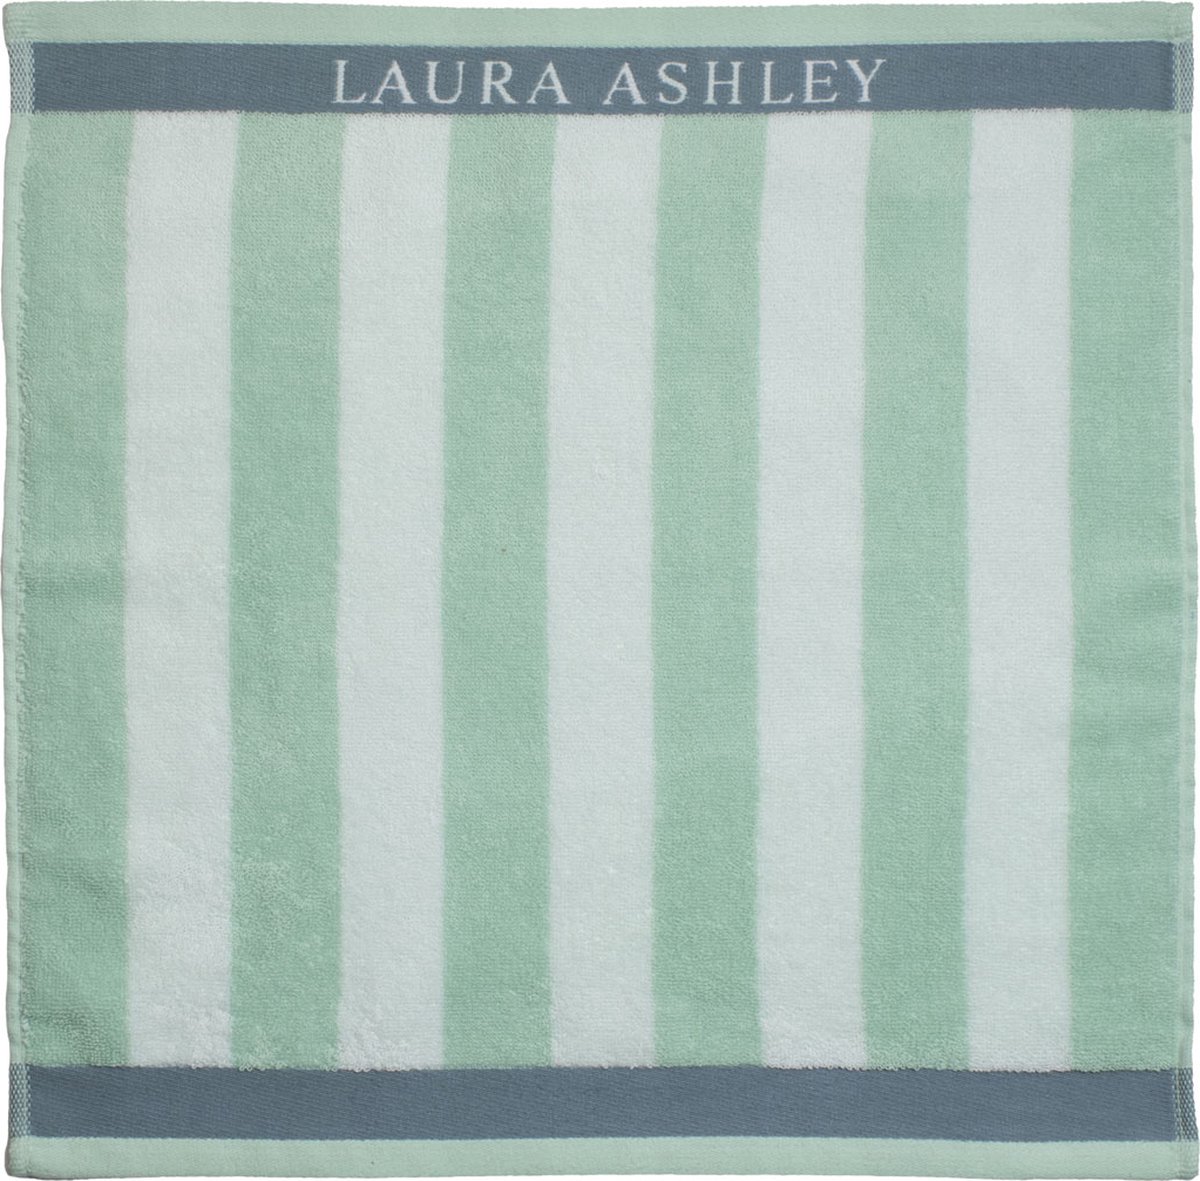 Laura Ashley Keukendoek Stripe 50X50 Cm Mint